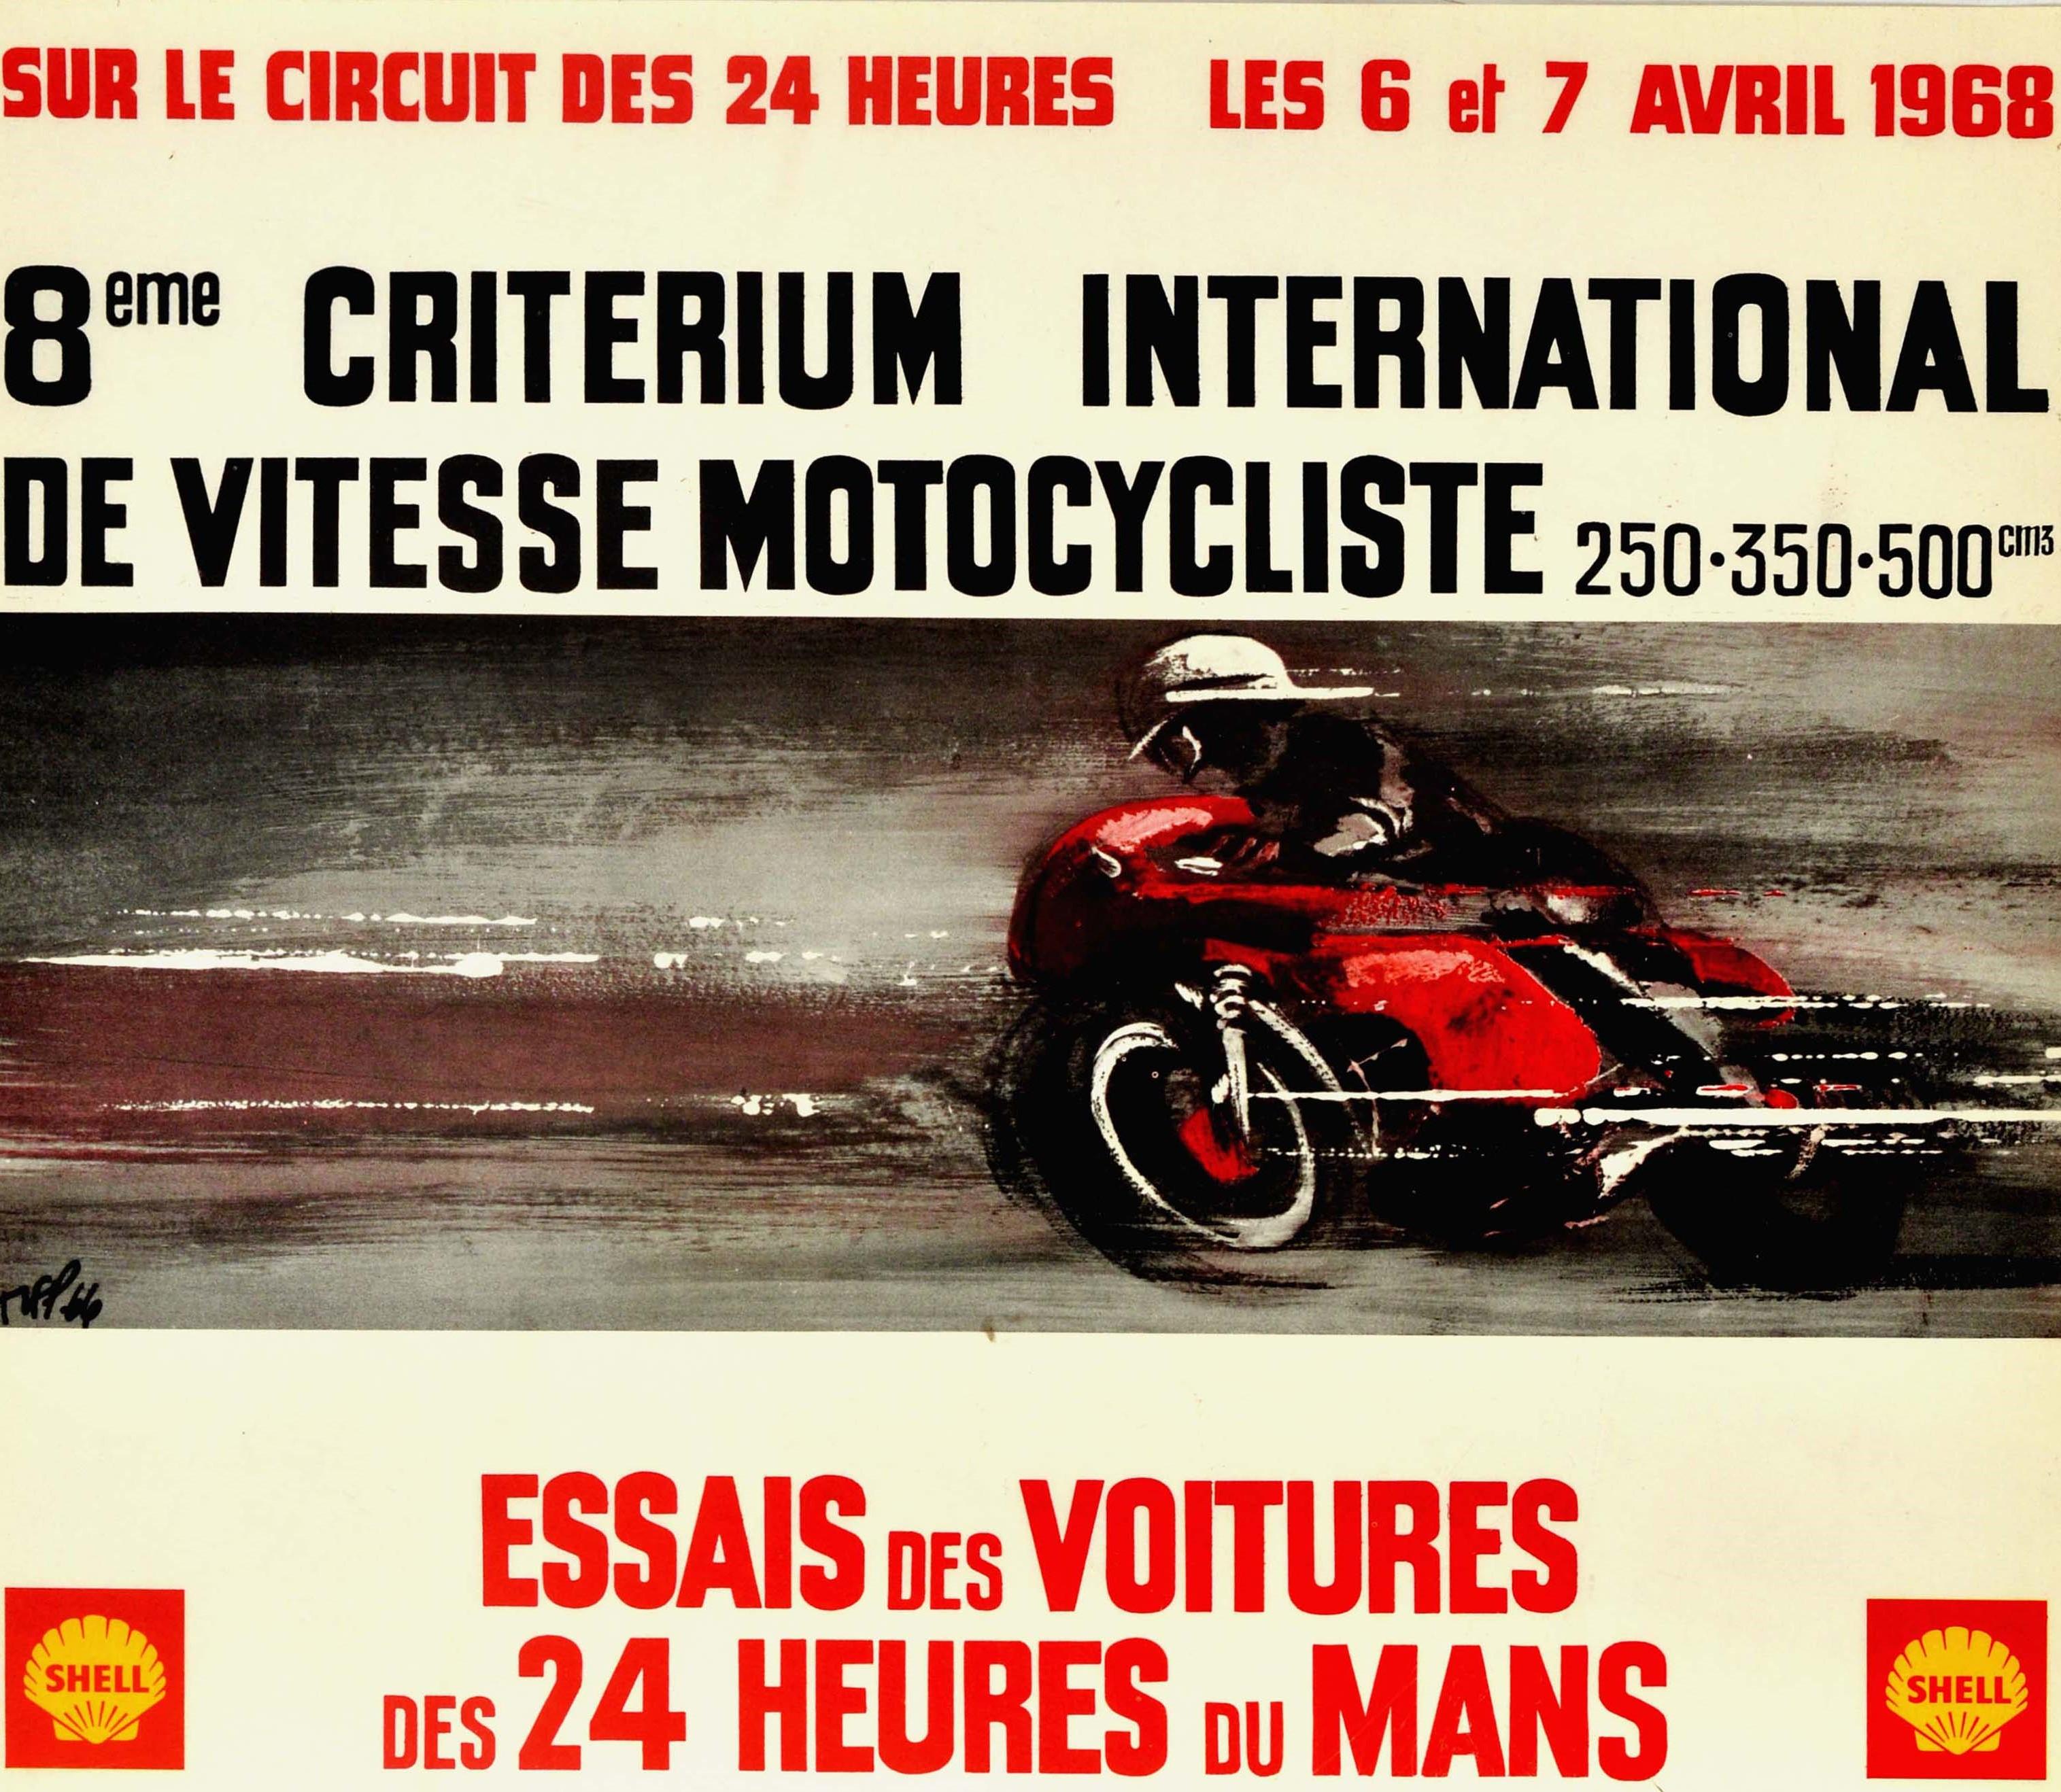 Original vintage motor sport poster for the 8eme Criterium International de Vitesse Motocycliste essais des voitures des 24 Heures du Mans sur les circuit des 24 heures les 6 et 7 Avril 1968 / 8th international motorcycle speed event and the 24